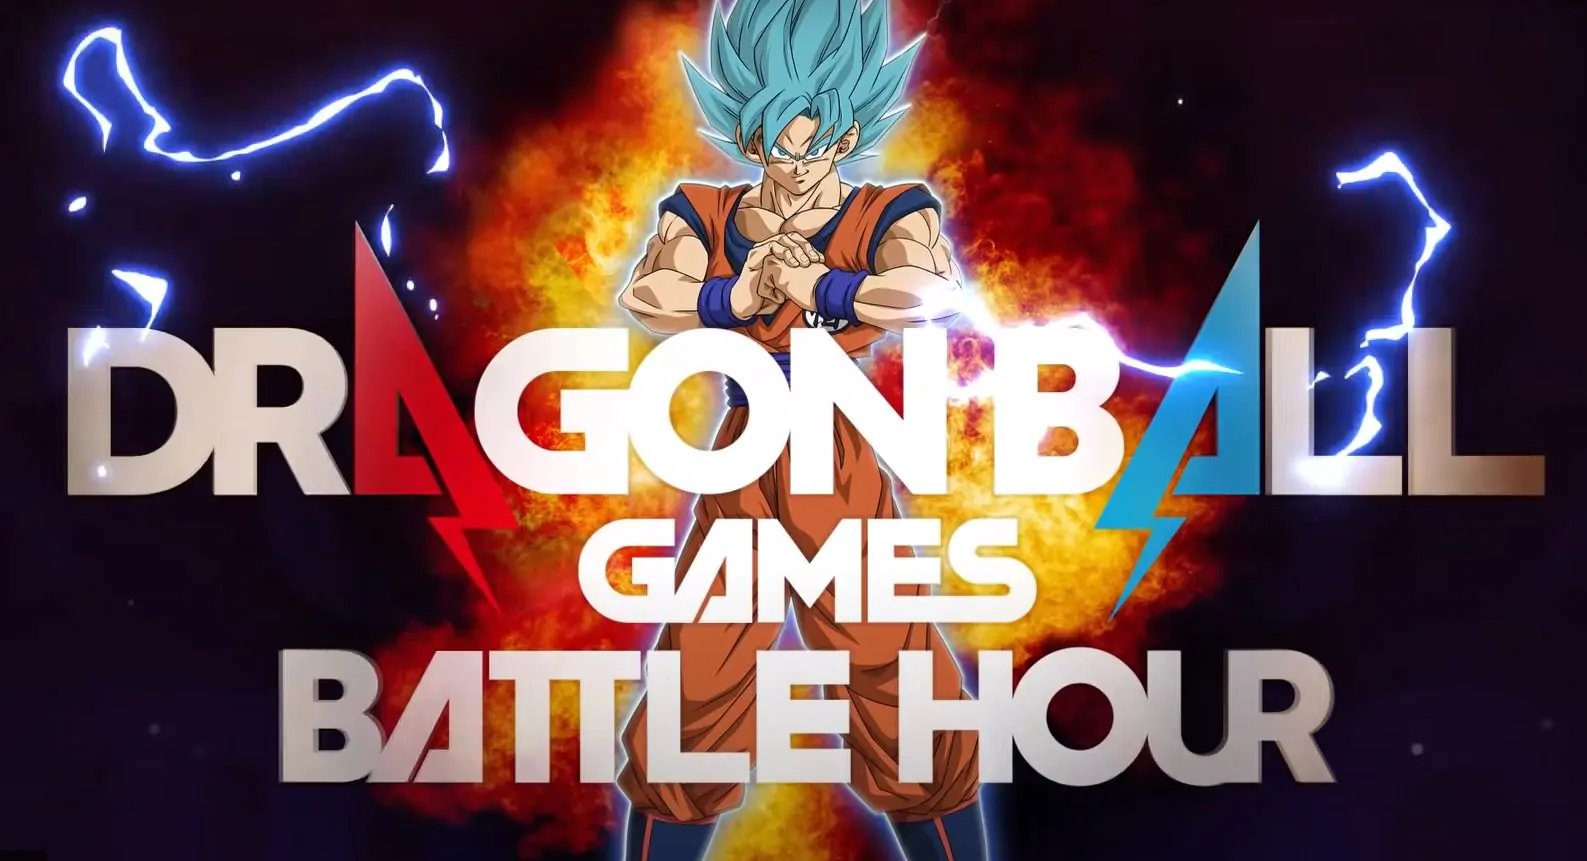 Dragon Ball Games Battle Hour evento em 6 de março